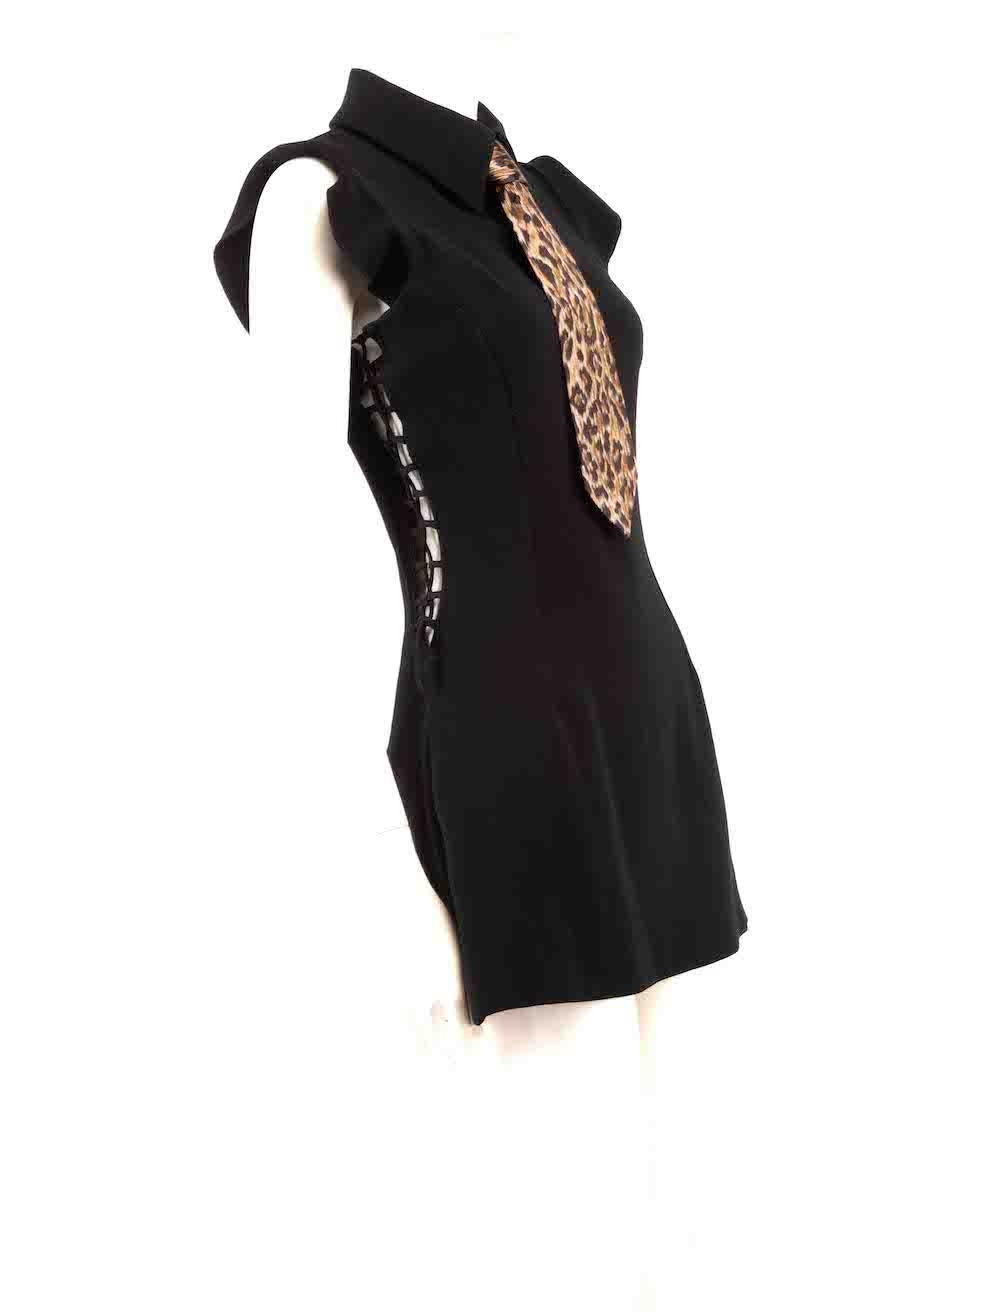 CONDIT ist gut. Leichte Abnutzungserscheinungen des Kleides sind erkennbar. Leichte Abnutzungserscheinungen an der Schulter und am Unterarmfutter mit verfärbten Flecken auf diesem gebrauchten Dolce & Gabbana Designer-Wiederverkaufsartikel.
 
 
 
